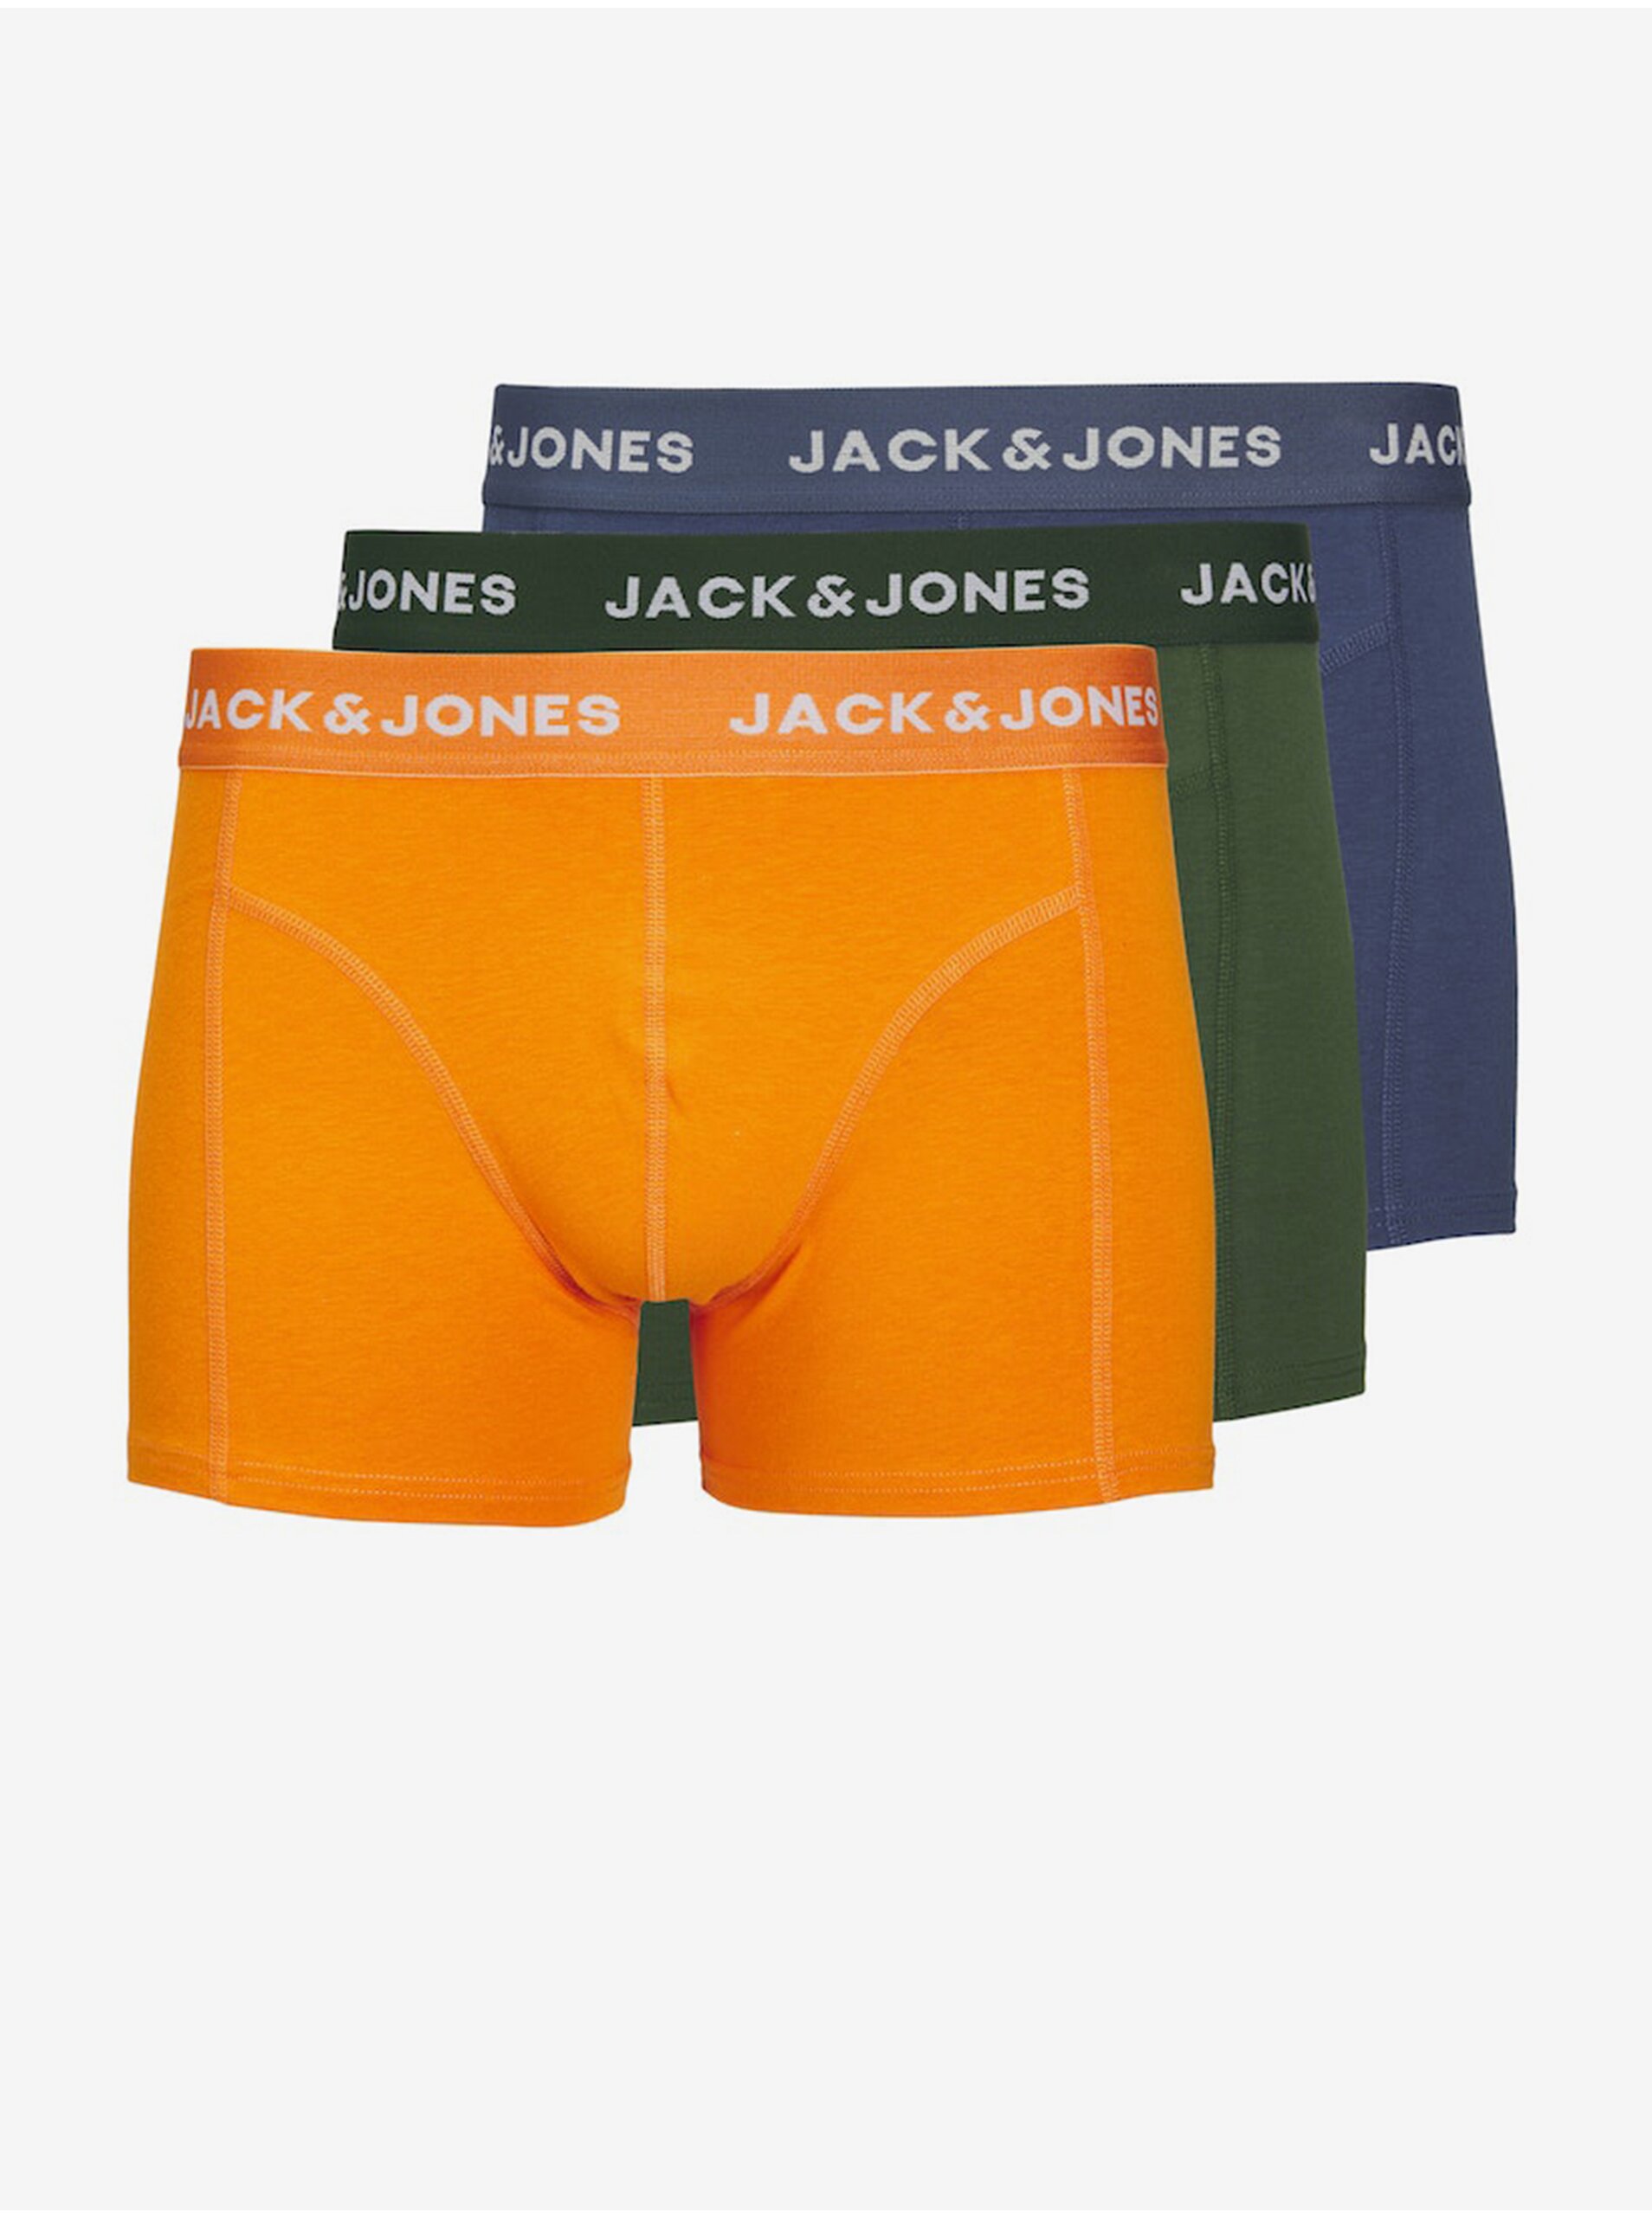 E-shop Súprava troch pánskych boxeriek v modrej, zelenej a oranžovej farbe Jack & Jones